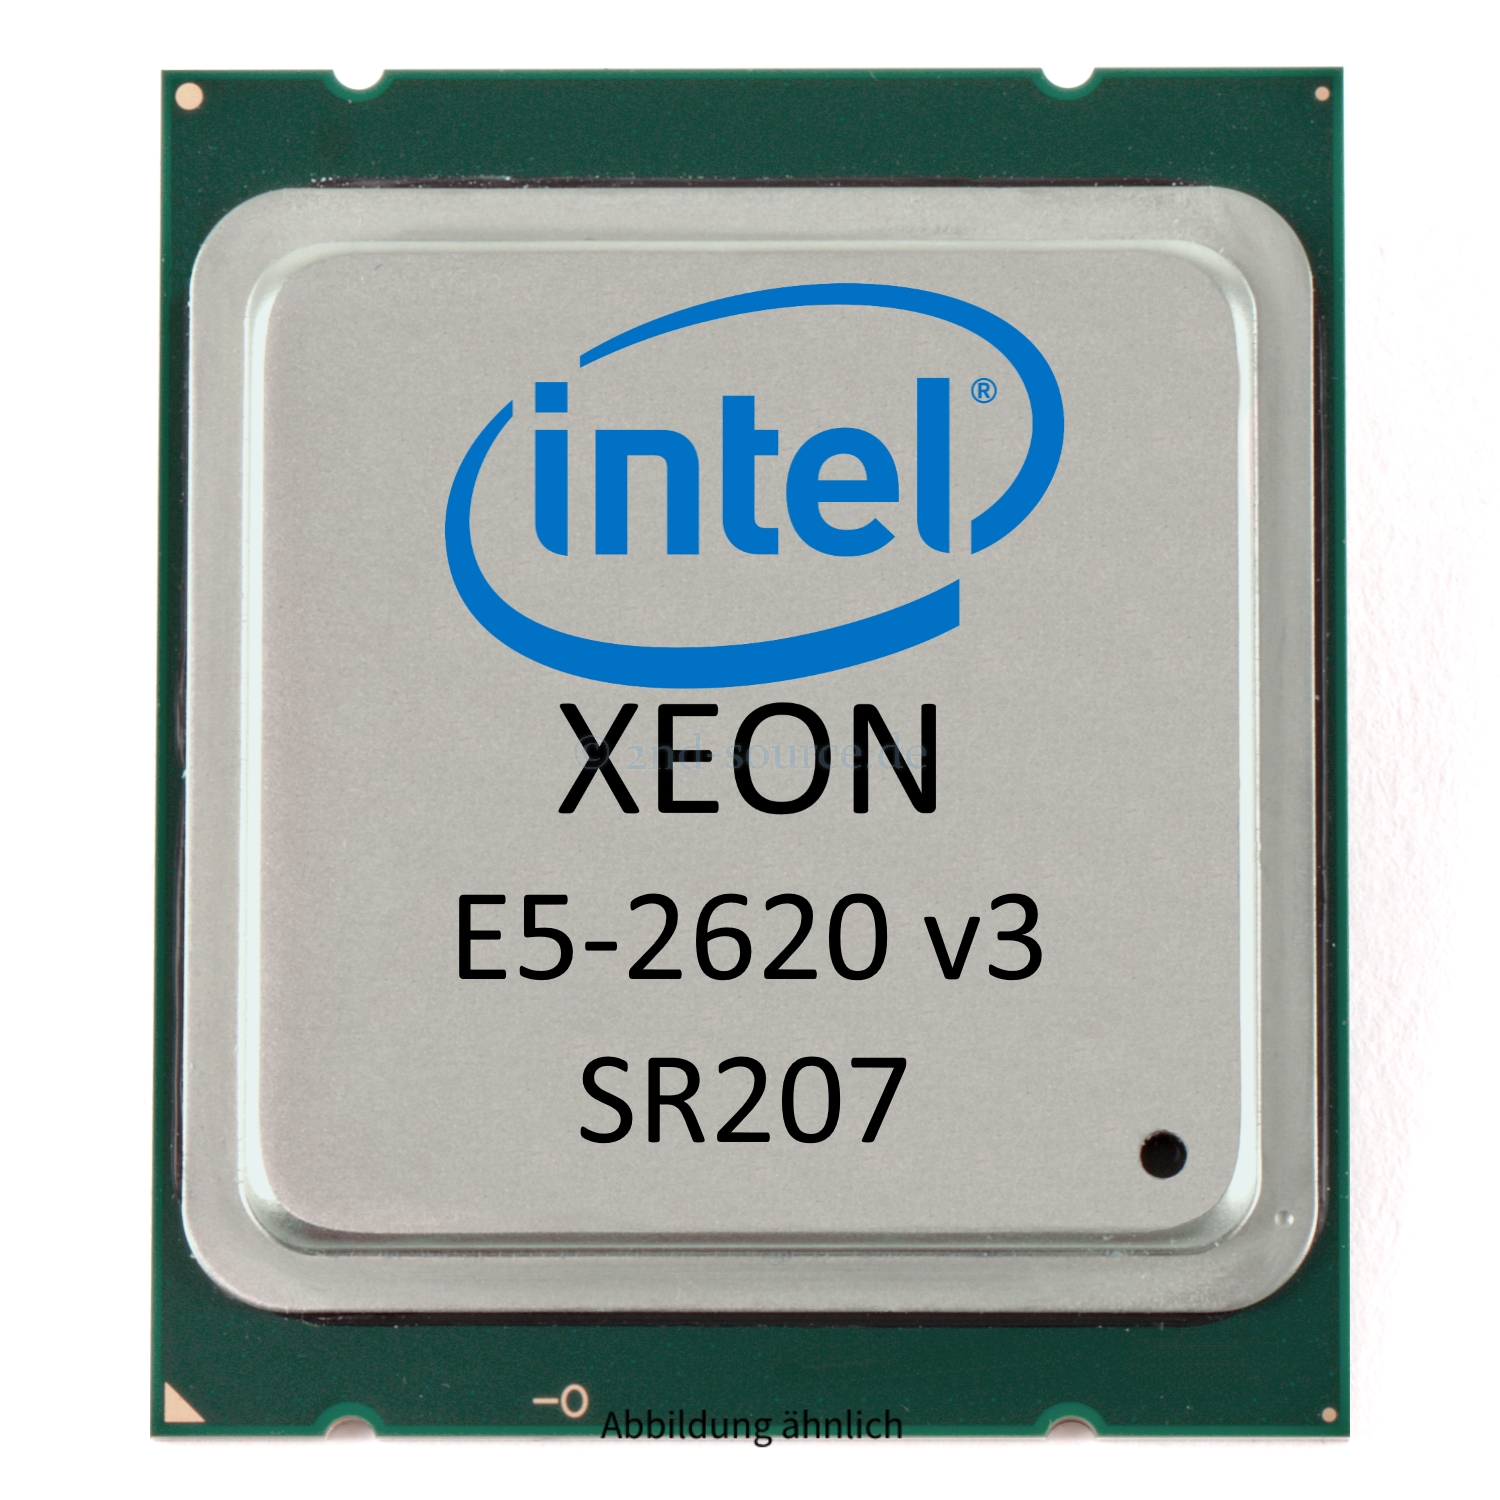 Intel Xeon E5-2620 v3 2.40GHz 15MB 6-Core CPU 85W SR207 CM8064401831400